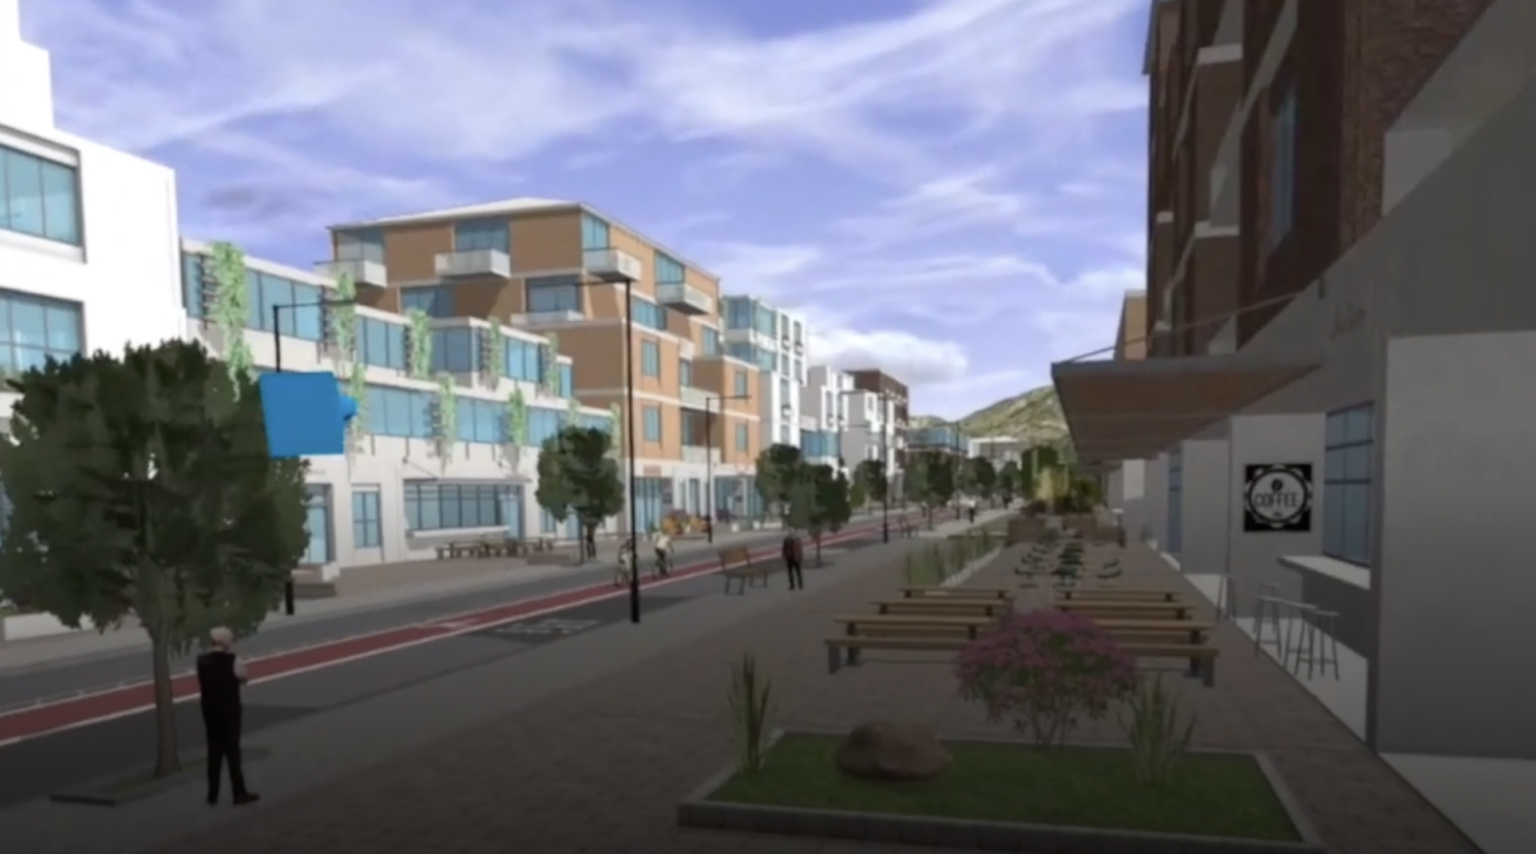 VR 헤드셋을 통해 본 건물, 도로, 푸른 나무가 있는 도시 블록의 3D 씬